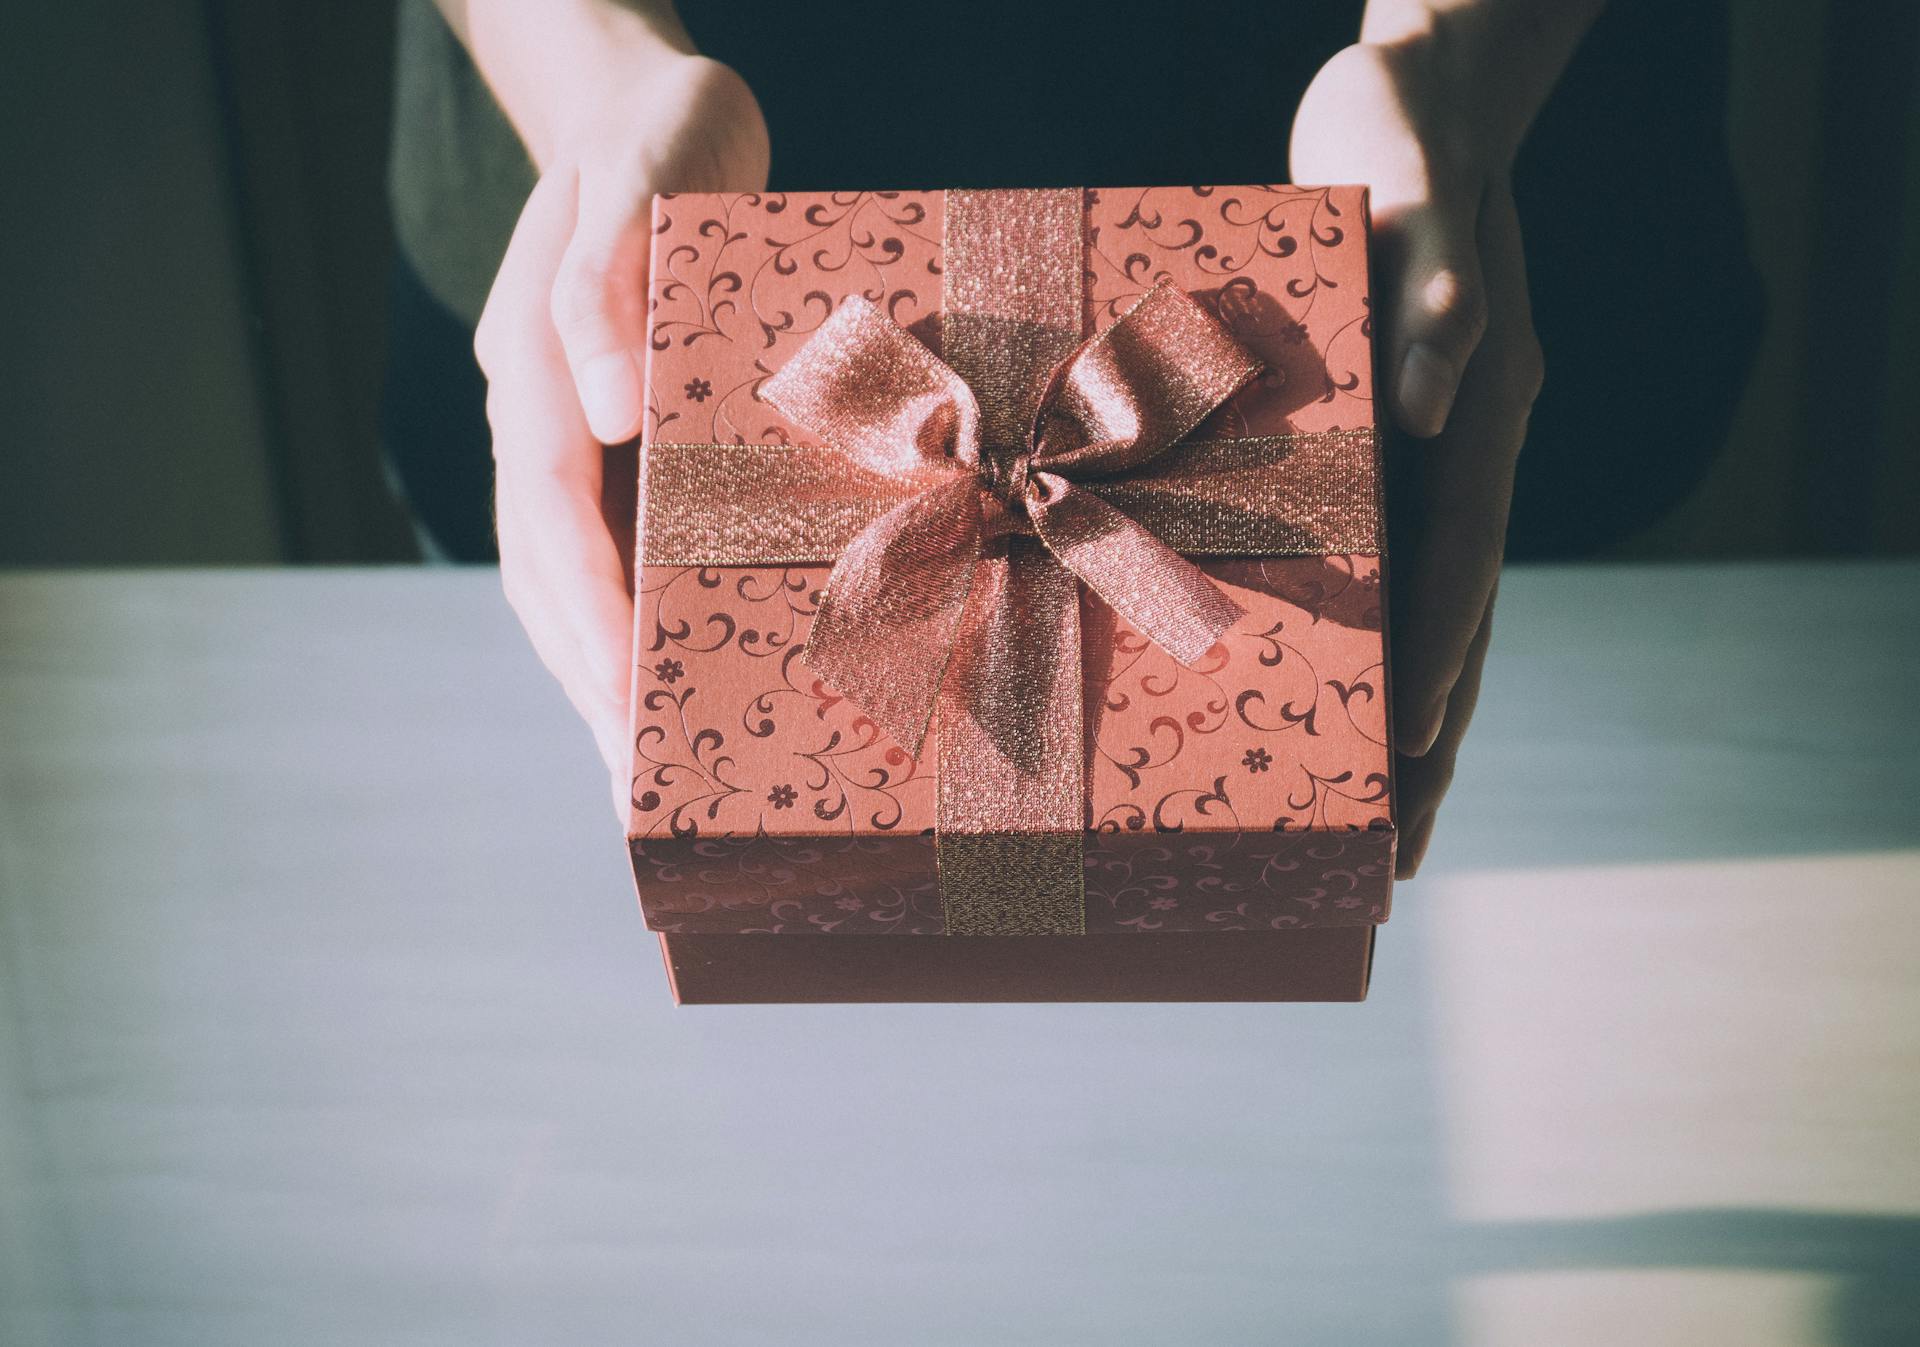 Una persona sostiene una caja de regalo | Fuente: Pexels